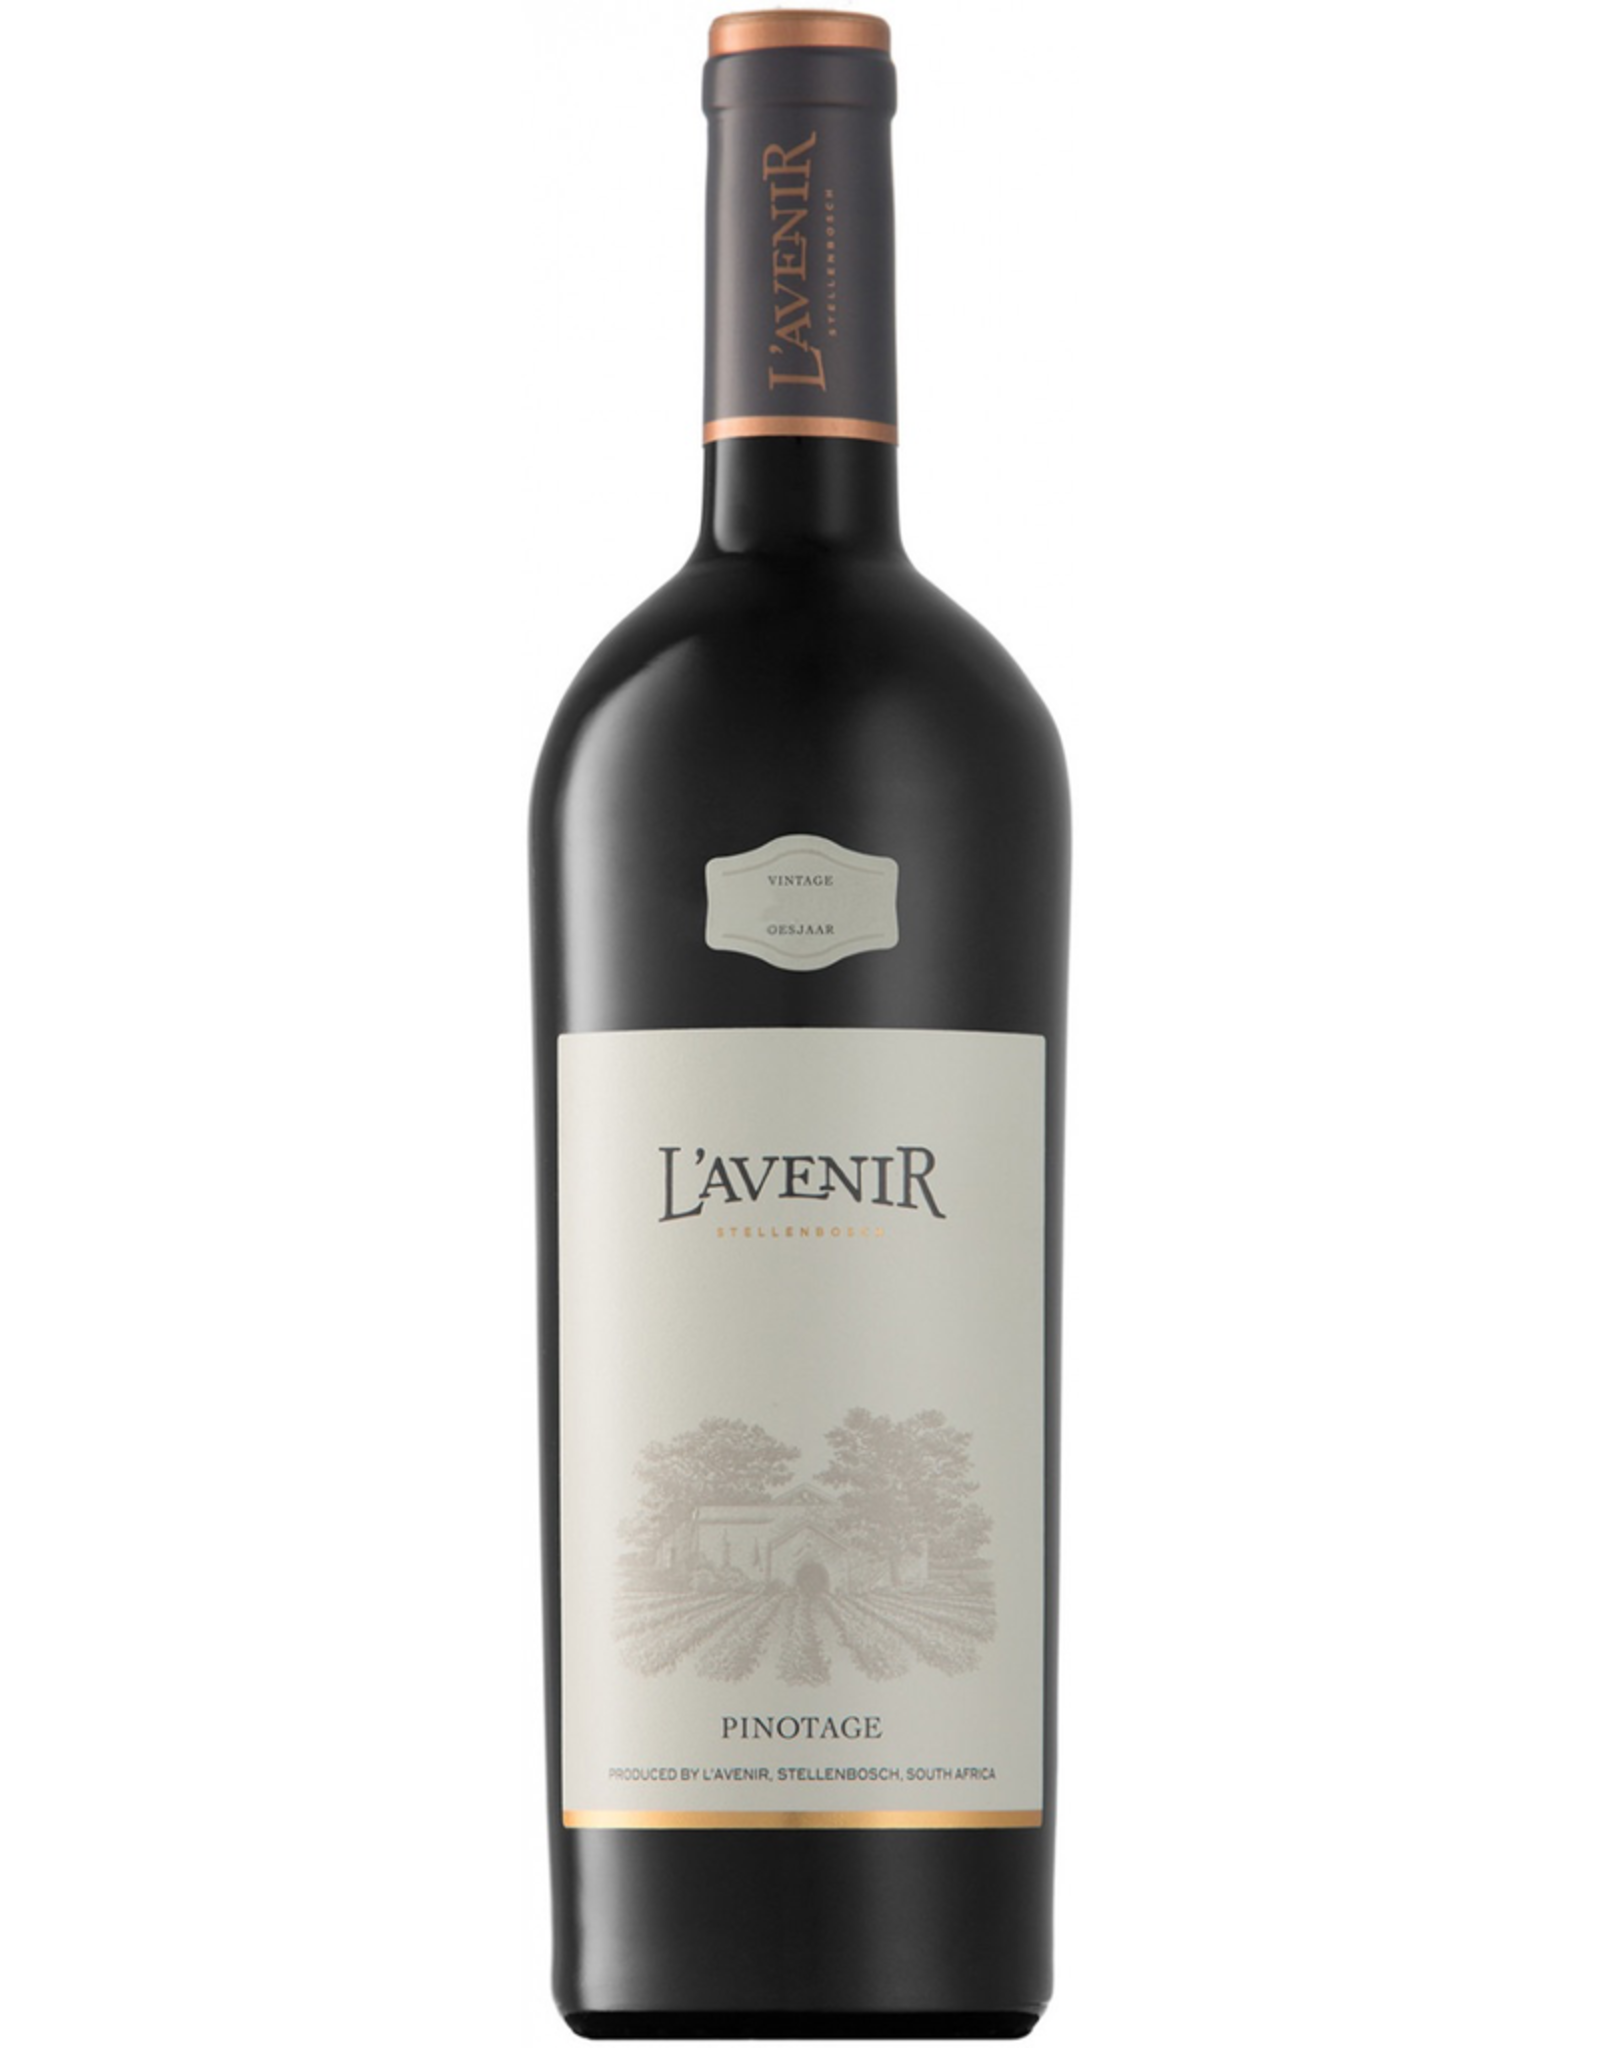 Red Wine 2014, L’Avenir Provenance, Pinotage, Stellenbosch, Coastal Region, South Africa, 14% Alc, TW93